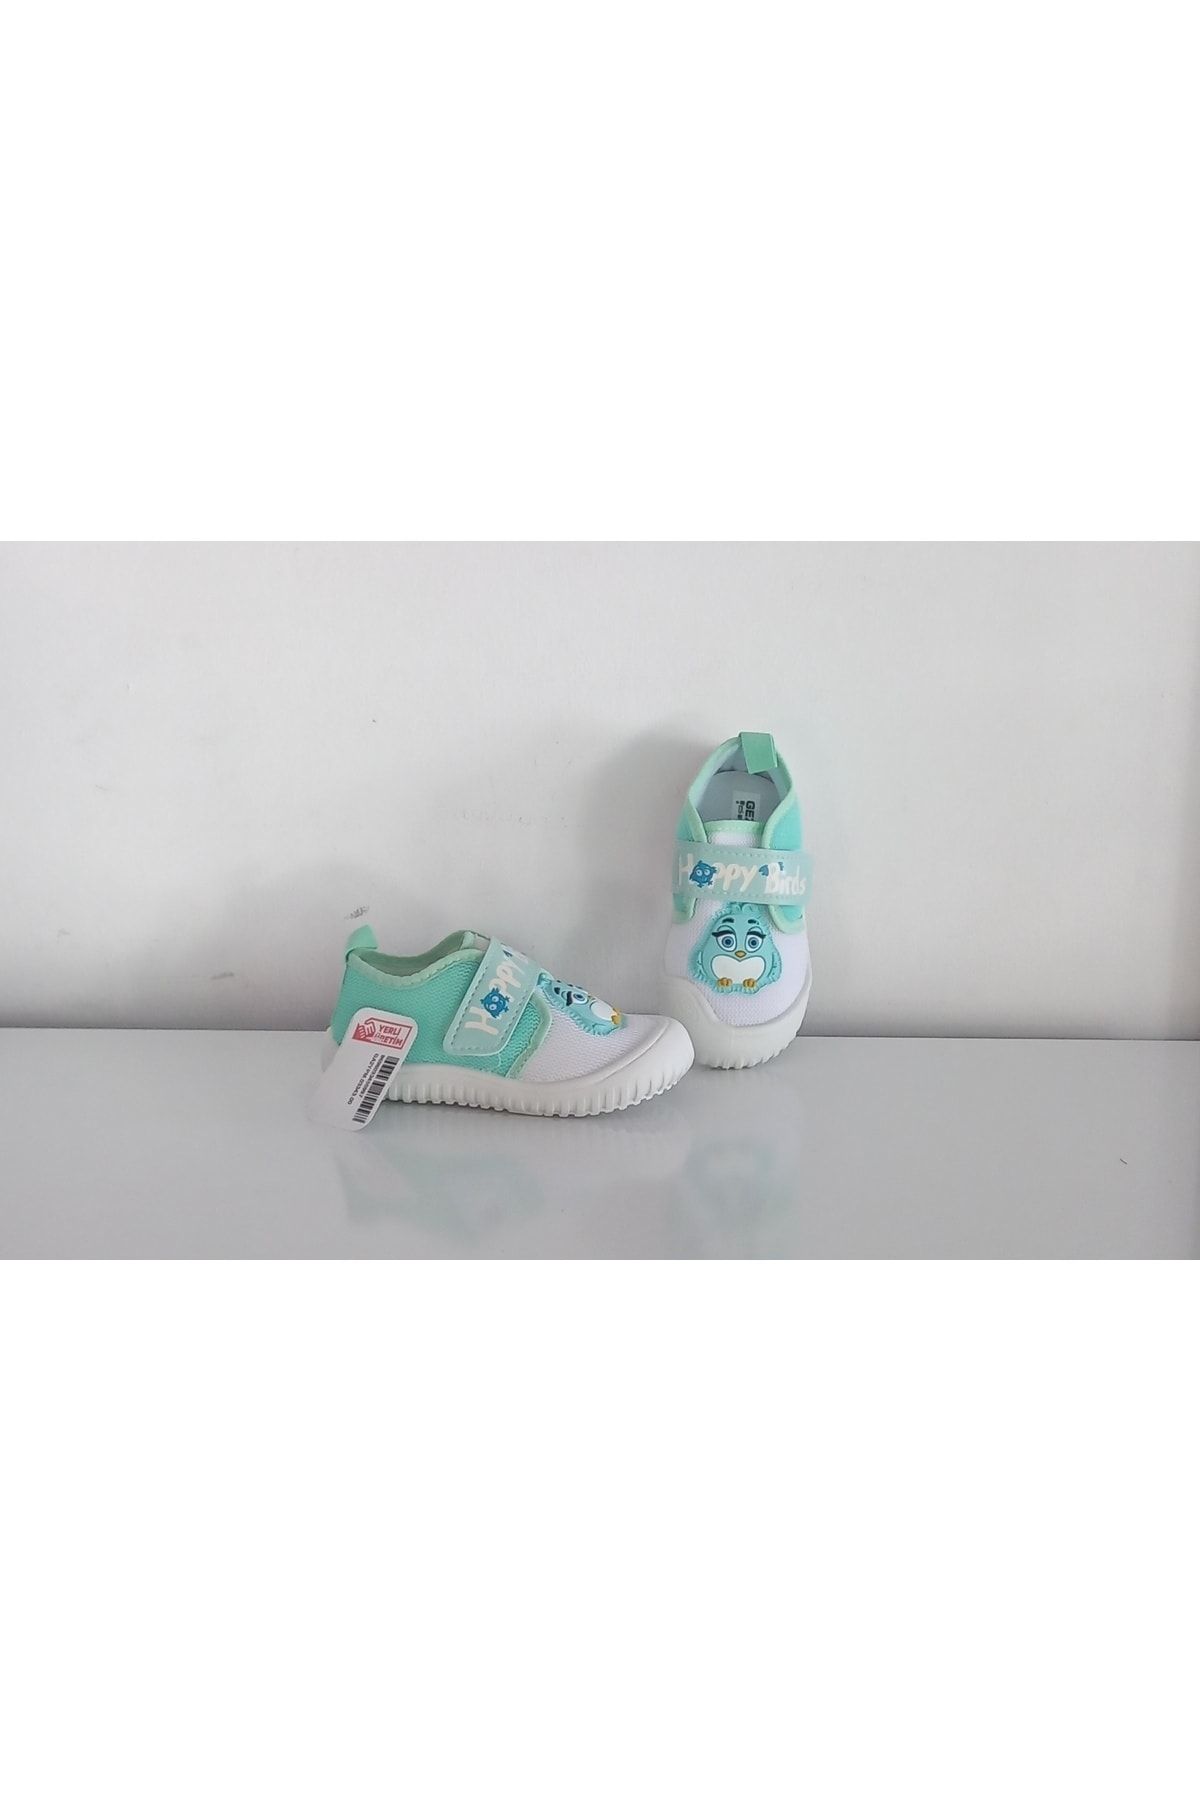 Gezer Yeşil-Beyaz Gezer 03343 Bantlı Figürlü Yumuşak Rahat Kız Çocuk Spor Ayakkabısı